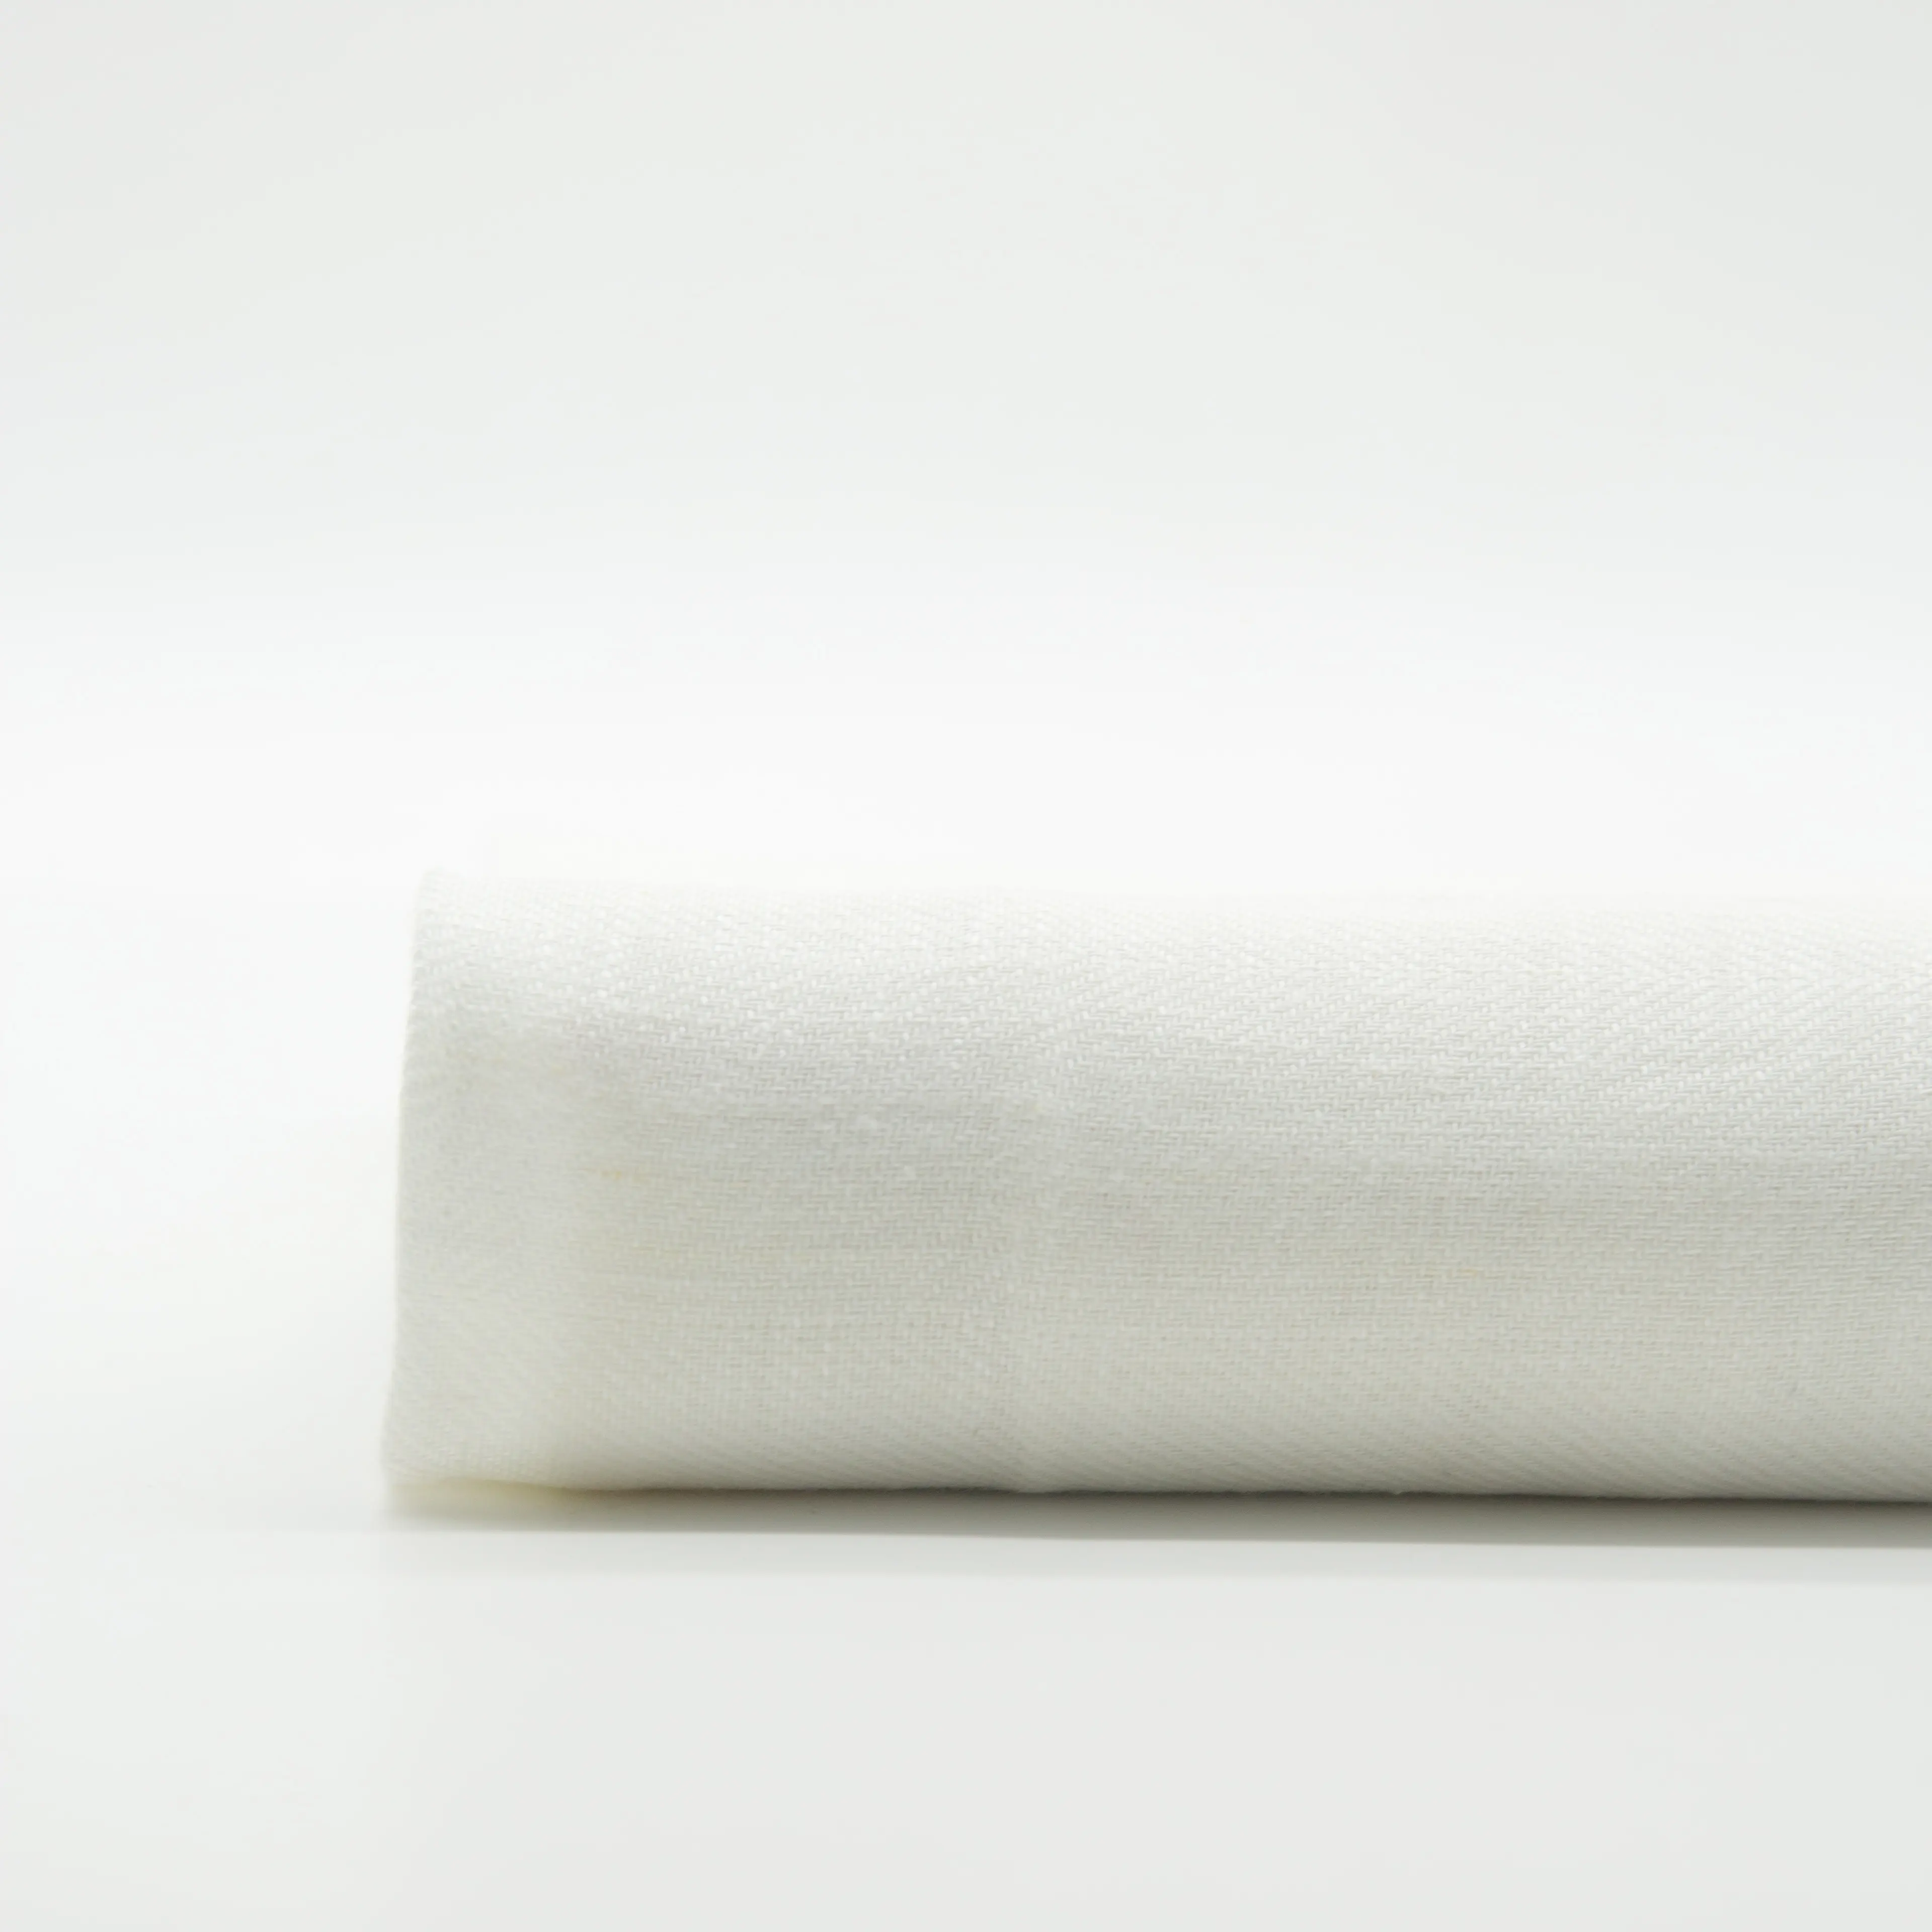 Eccellente di vendita calda rayon lino bianco solido tessuto per camicie